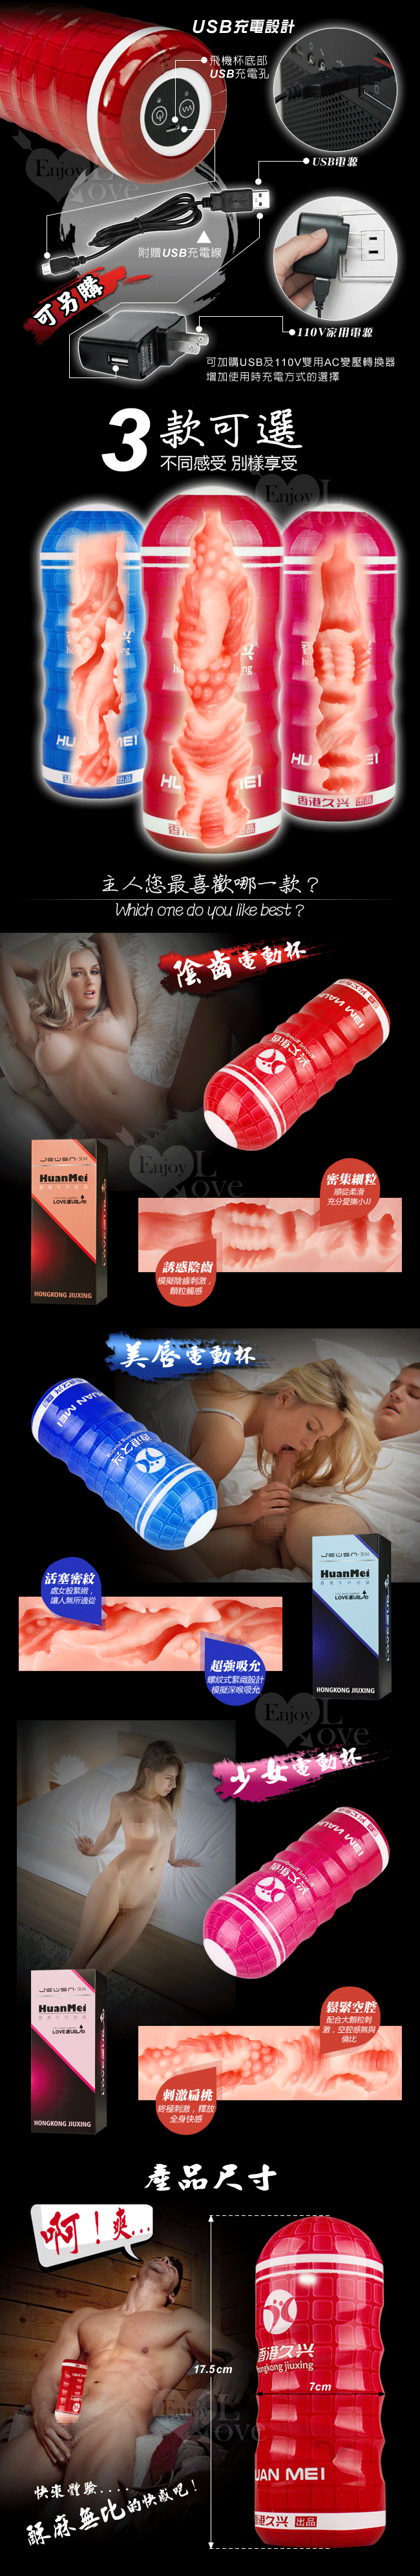 【香港久興】HUANMEI2 幻魅2代 3D複雜仿真肉腔USB充電震動杯﹝紅色陰齒款﹞#566024